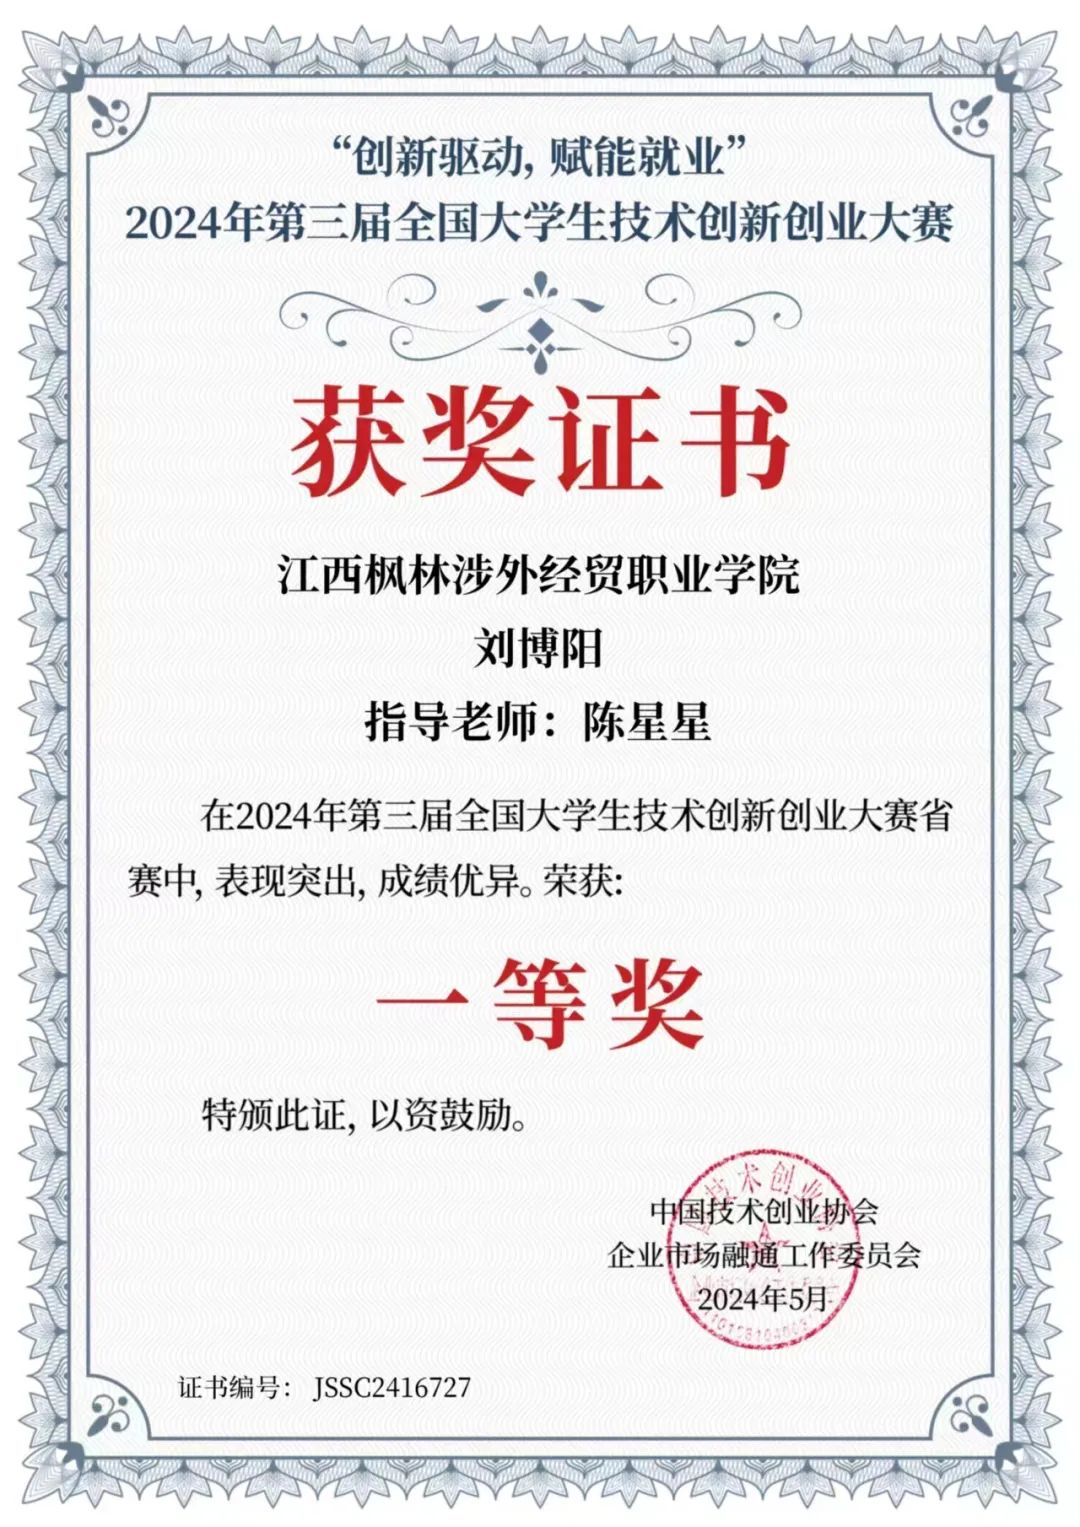 江西枫林涉外经贸职业学院学子在第三届全国大学生技术创新创业大赛荣获省级一等奖